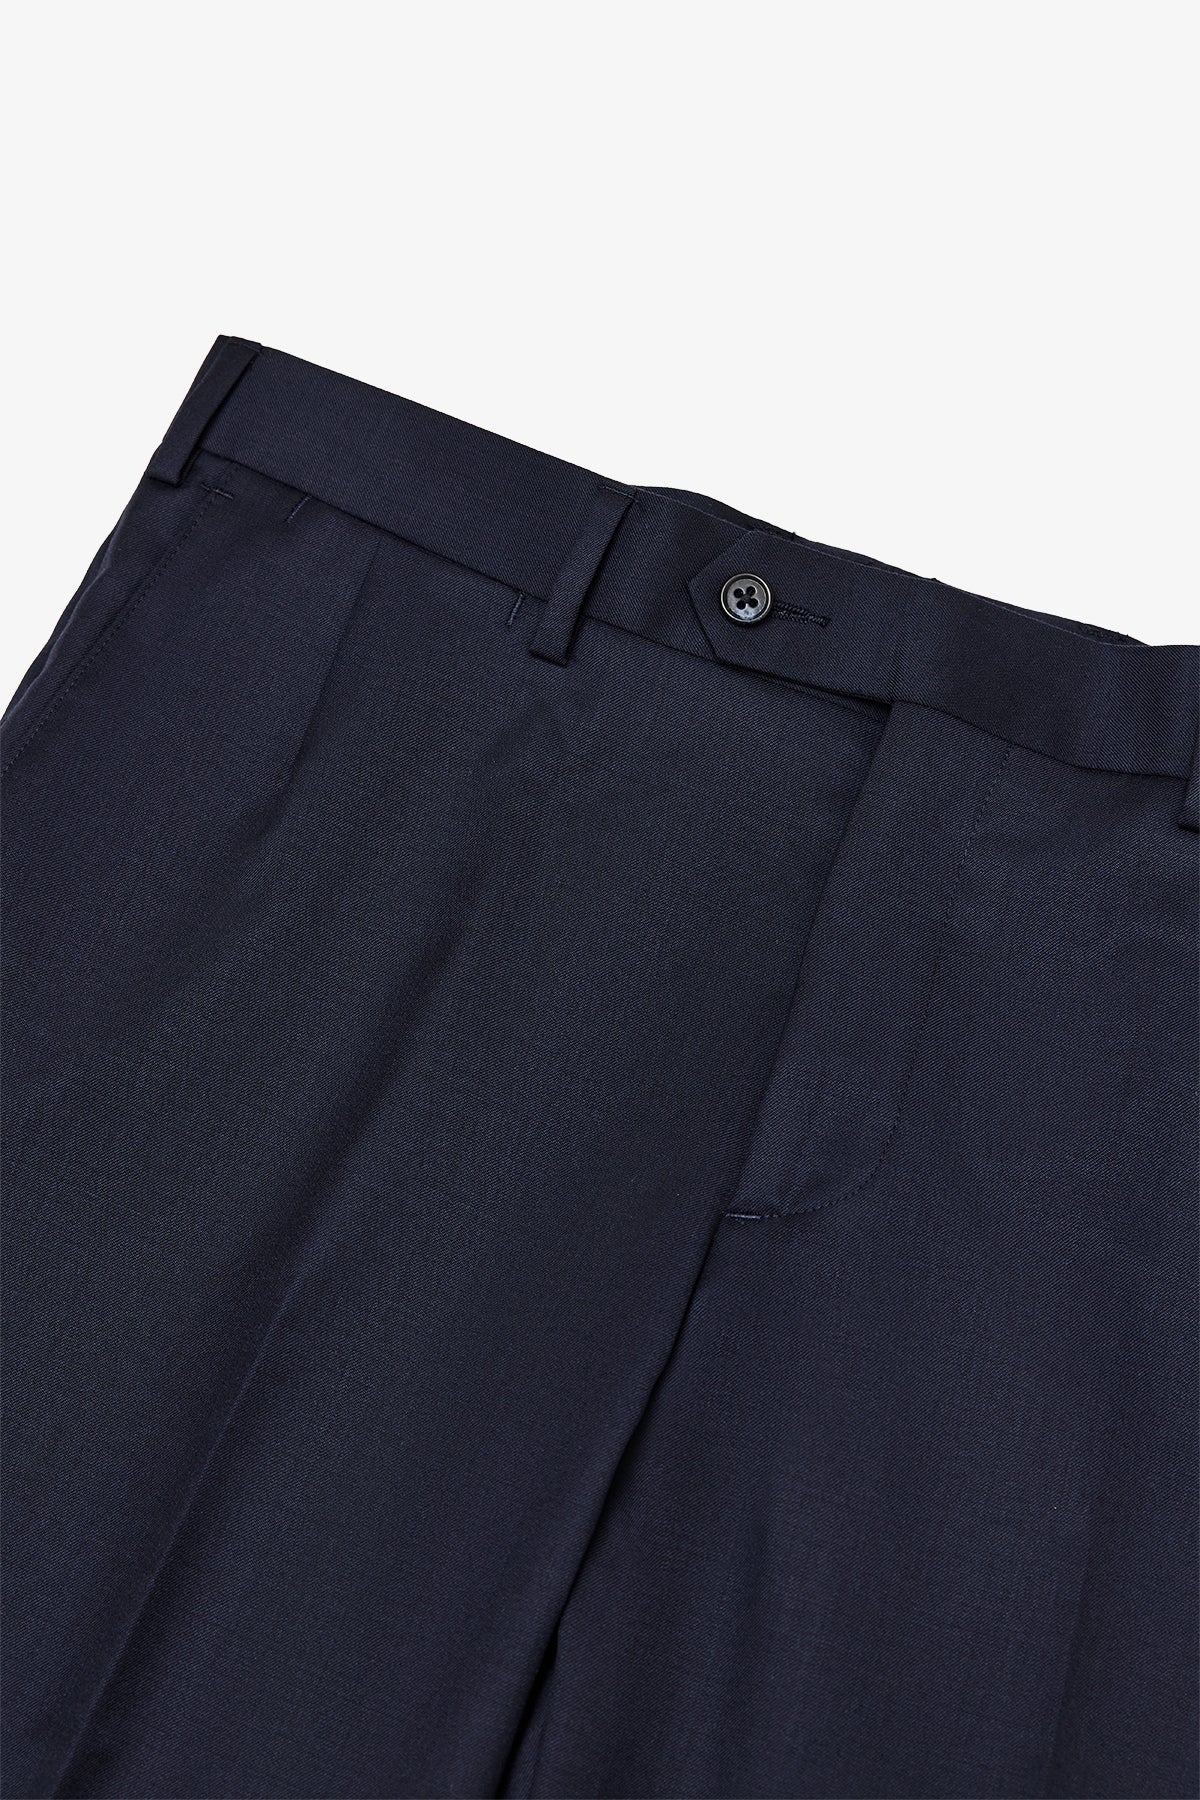 Tives - Navy Trouser